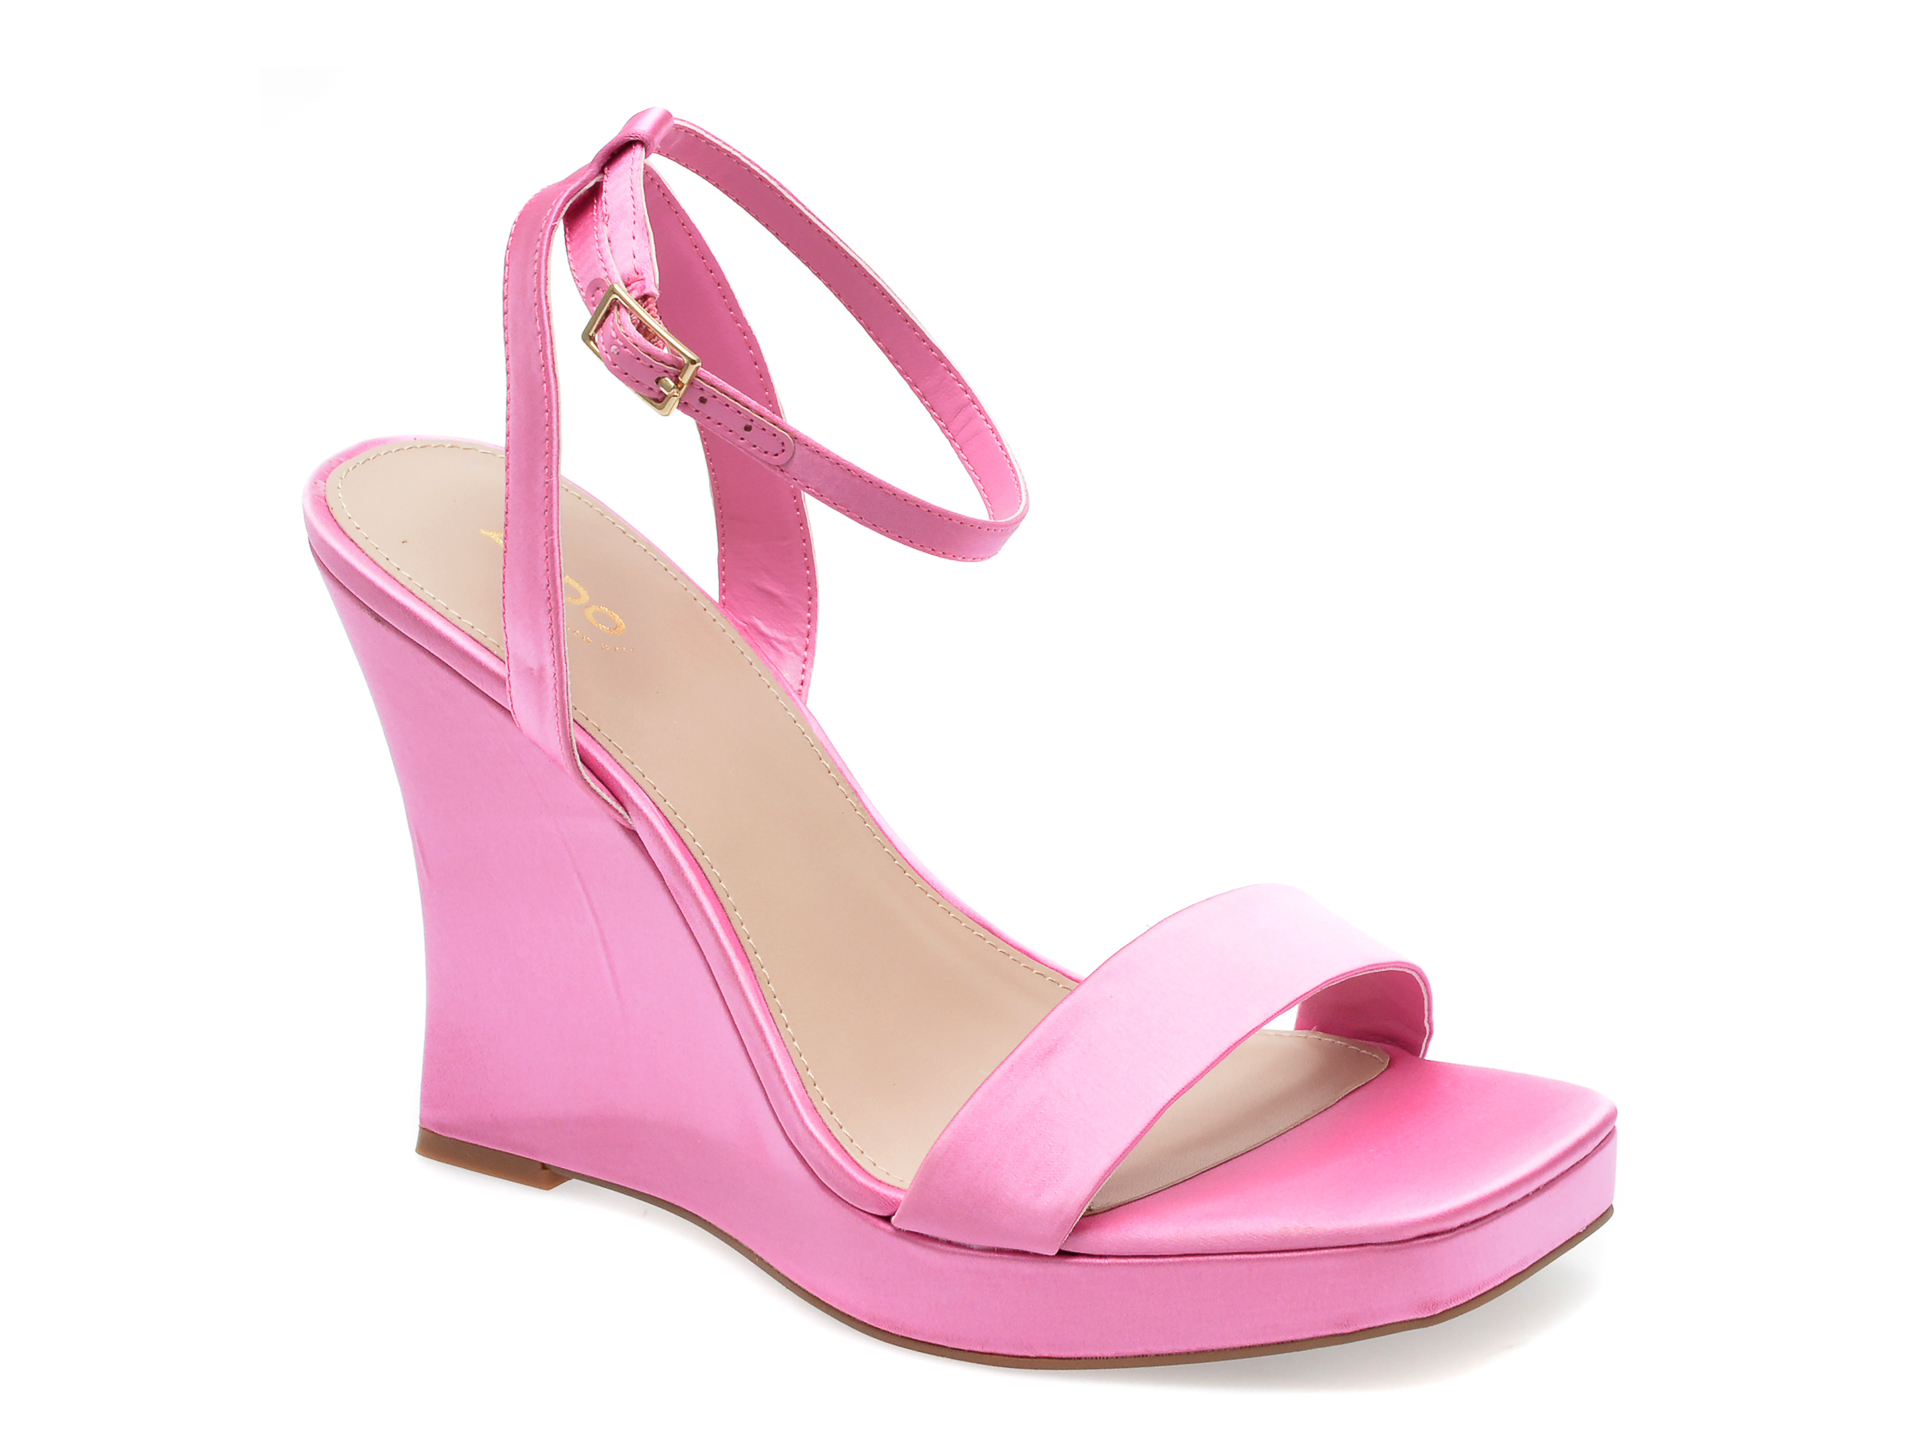 Sandale ALDO roz, NUALA660, din material textil